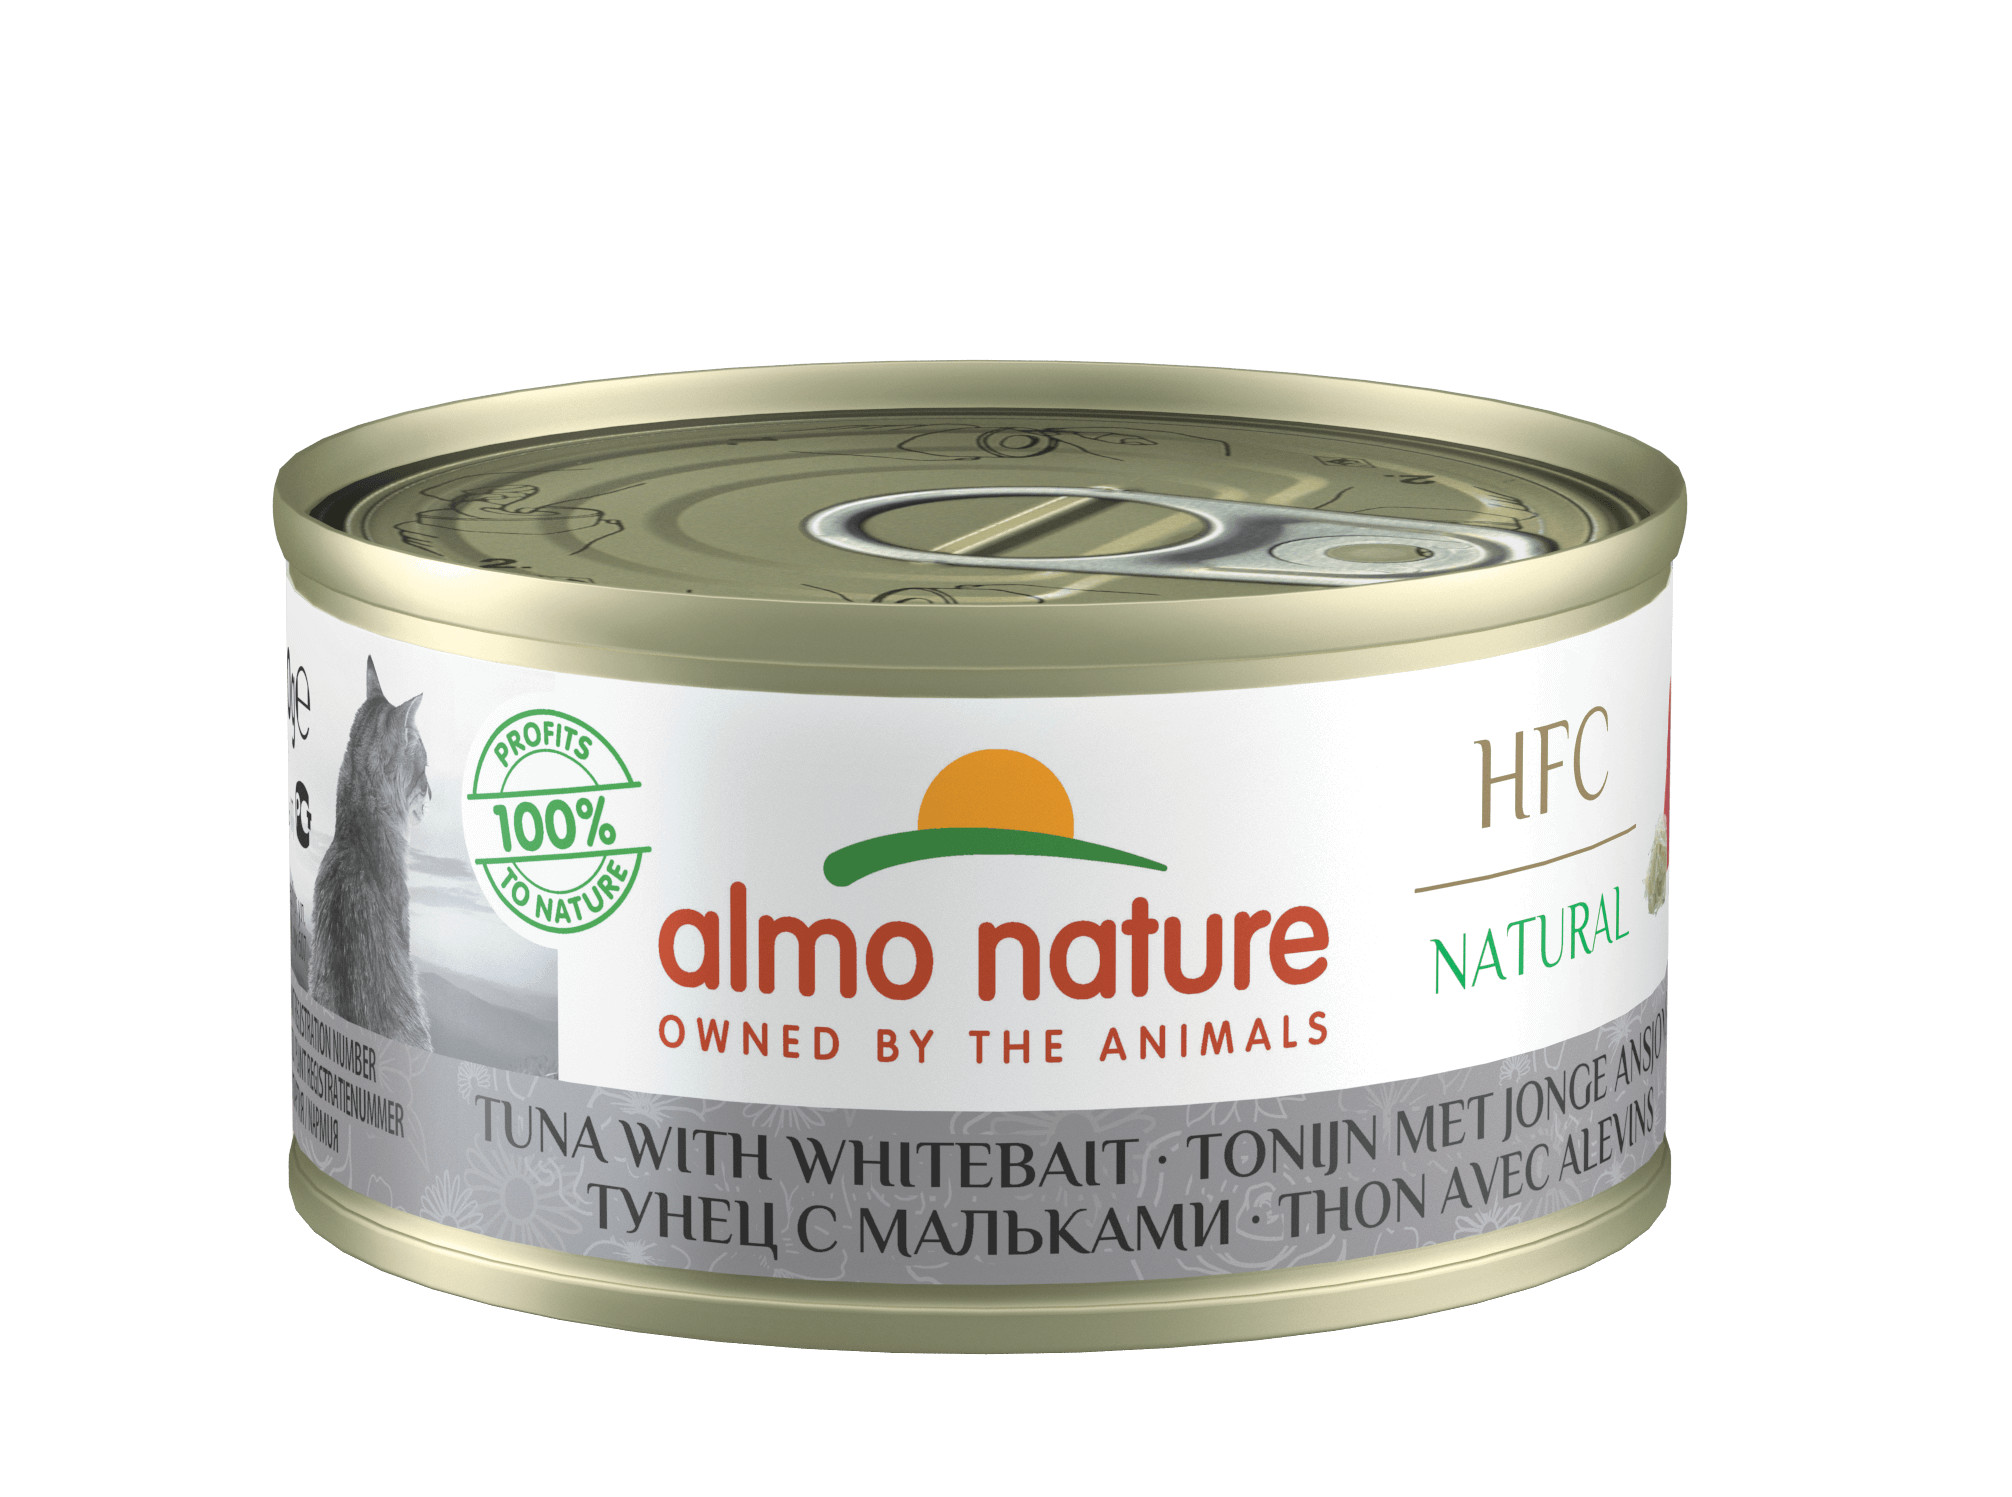 Almo Nature HFC Natural tunfisk og ansjoser kattefoder (70 g)